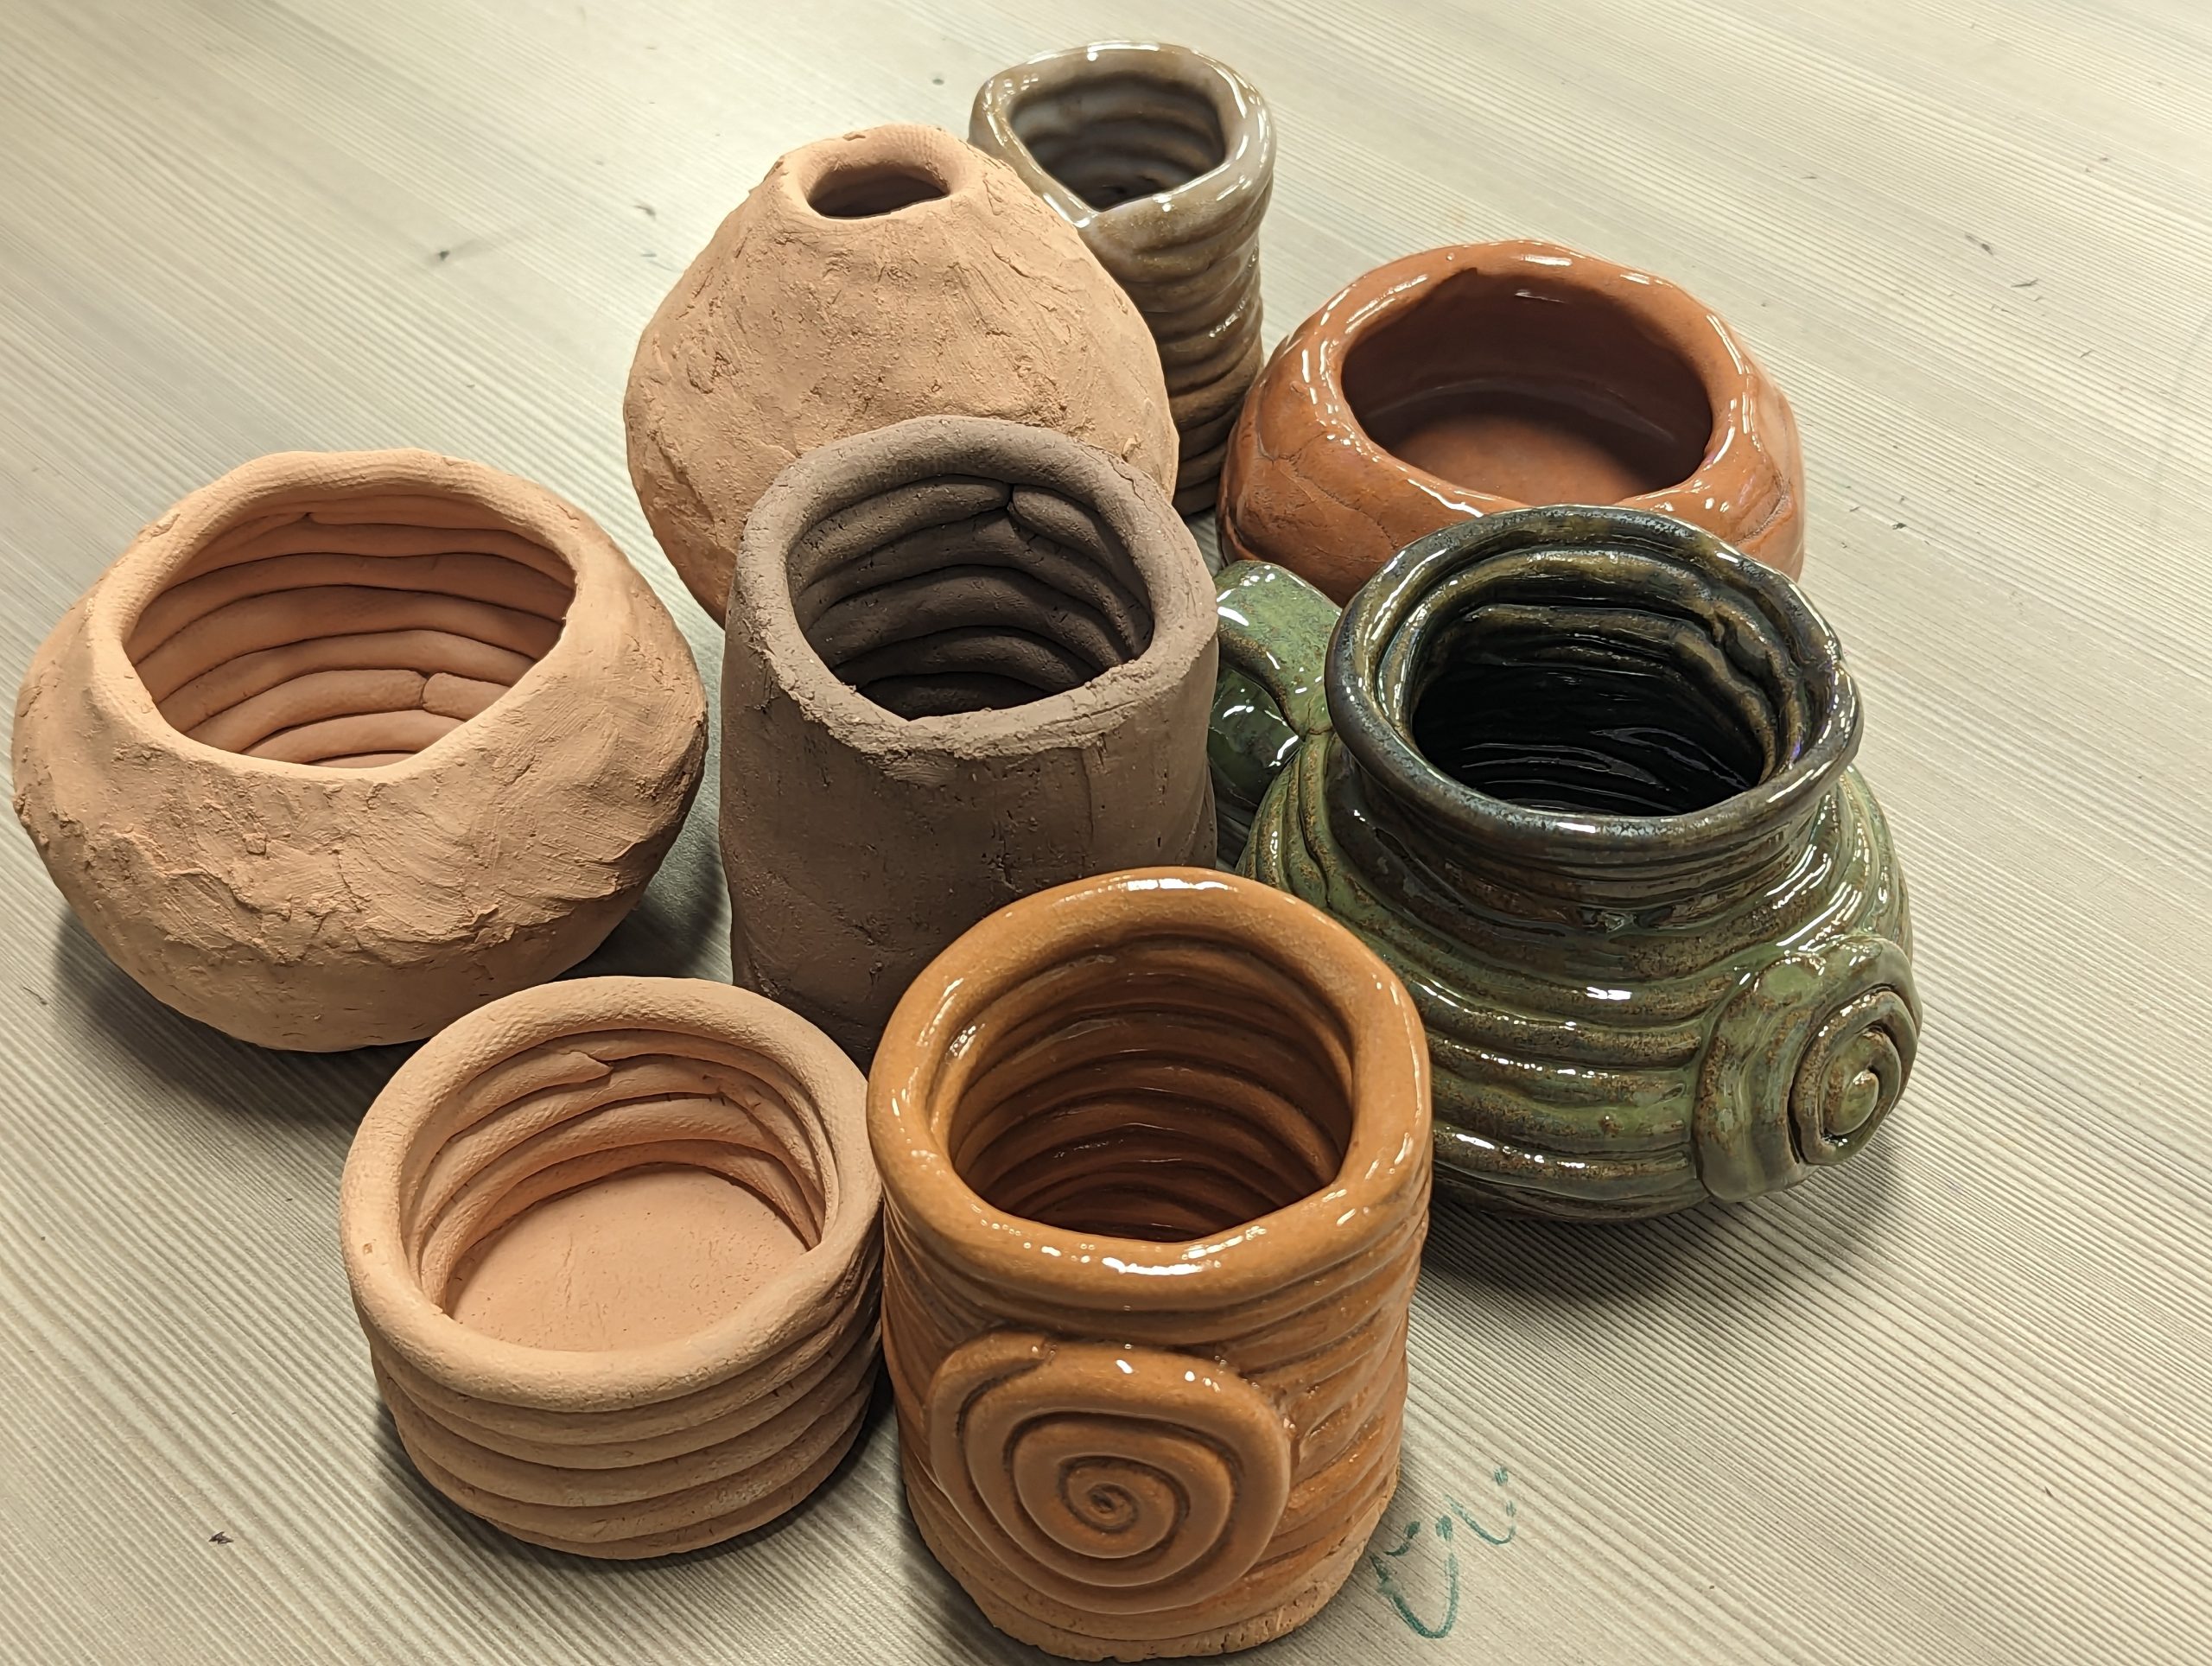 Clay coil pots